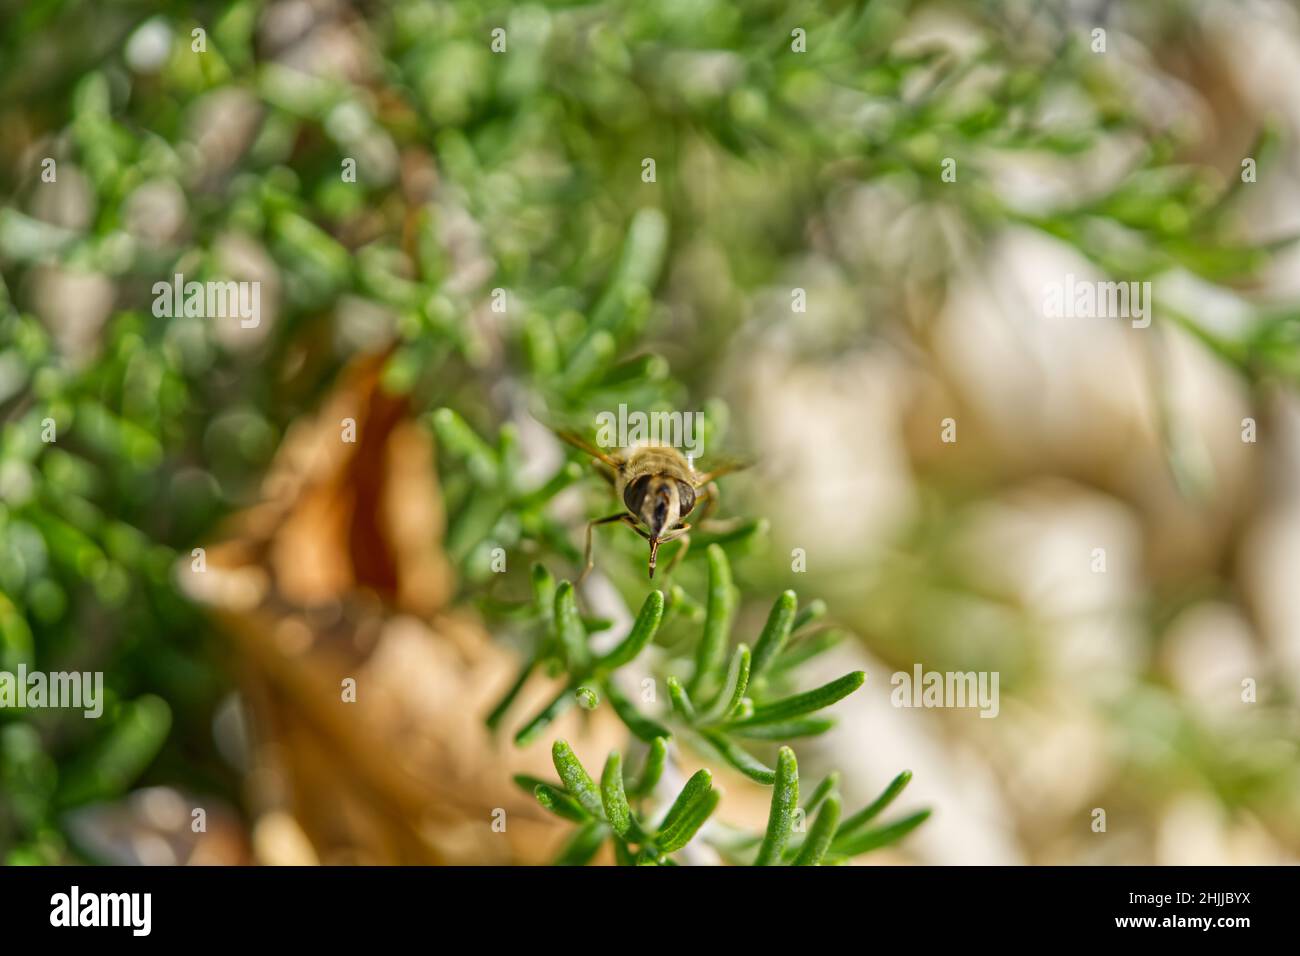 Un macro shot di un'ape che vola vicino a piante verdi da giardino Foto Stock